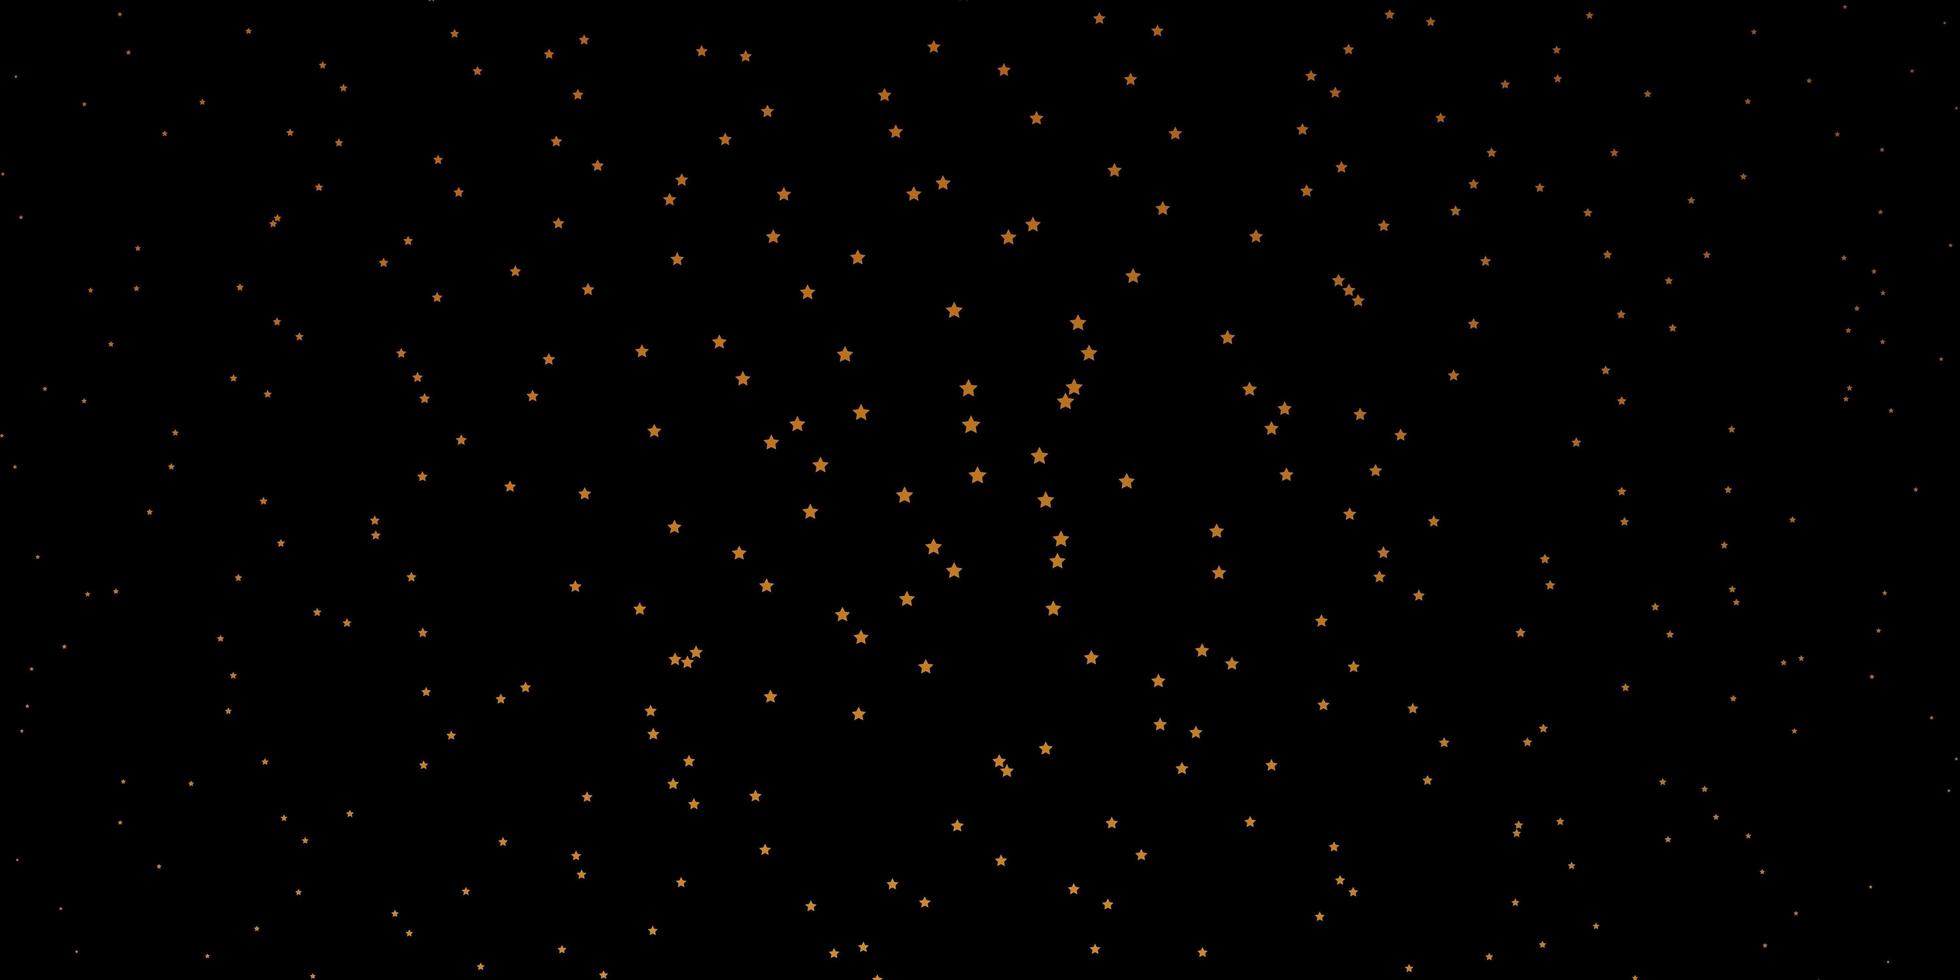 Fondo de vector naranja oscuro con estrellas de colores.